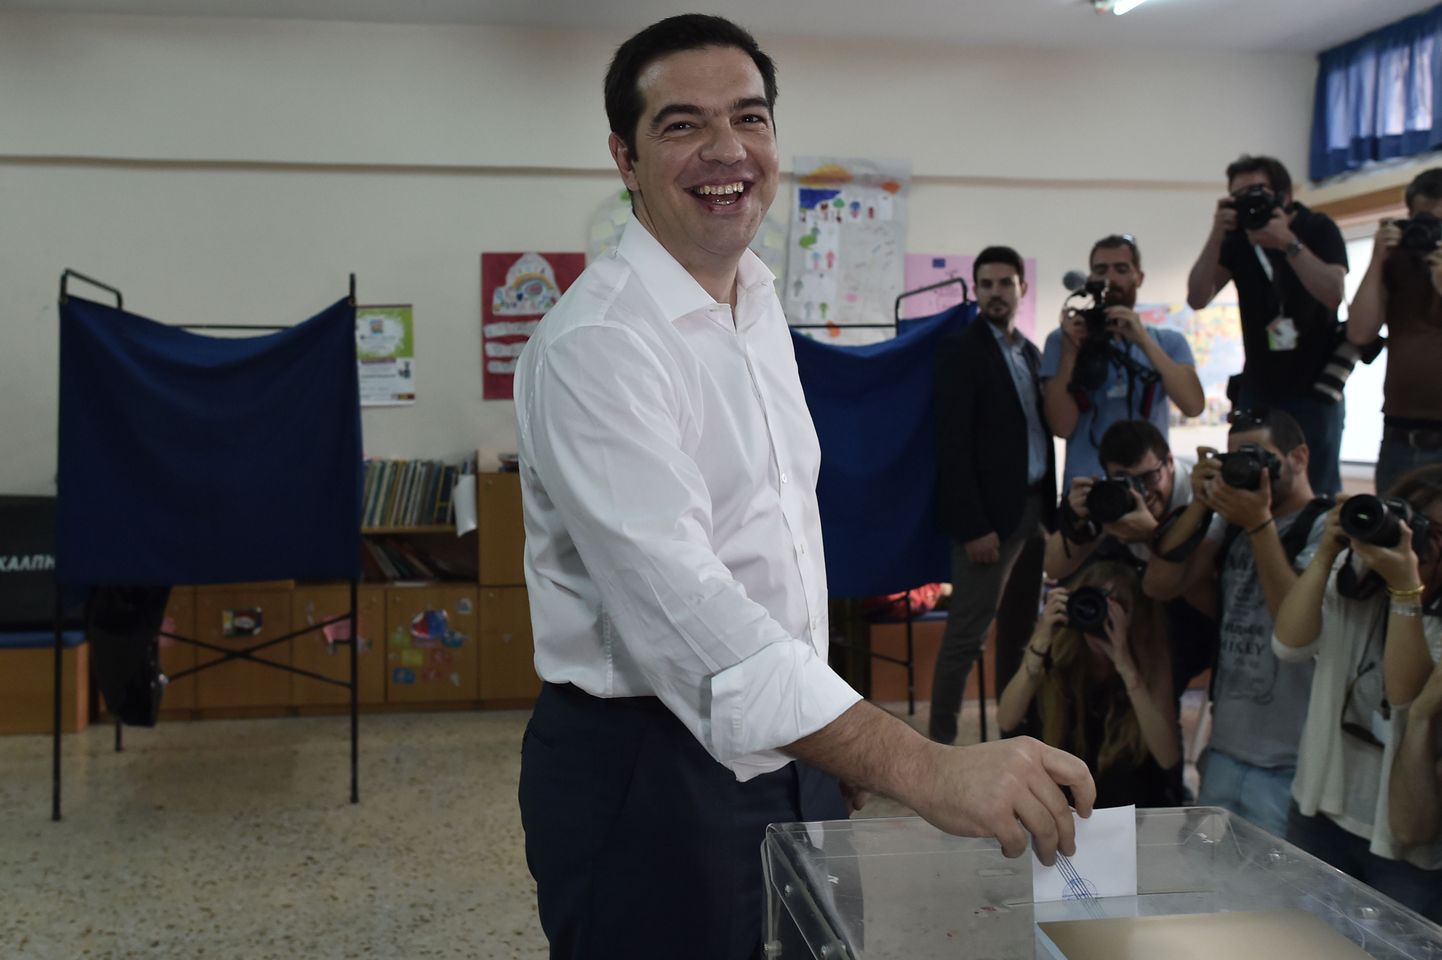 Võib eeldada, et Kreeka peaminister Alexis Tsipras hääletas "ei".